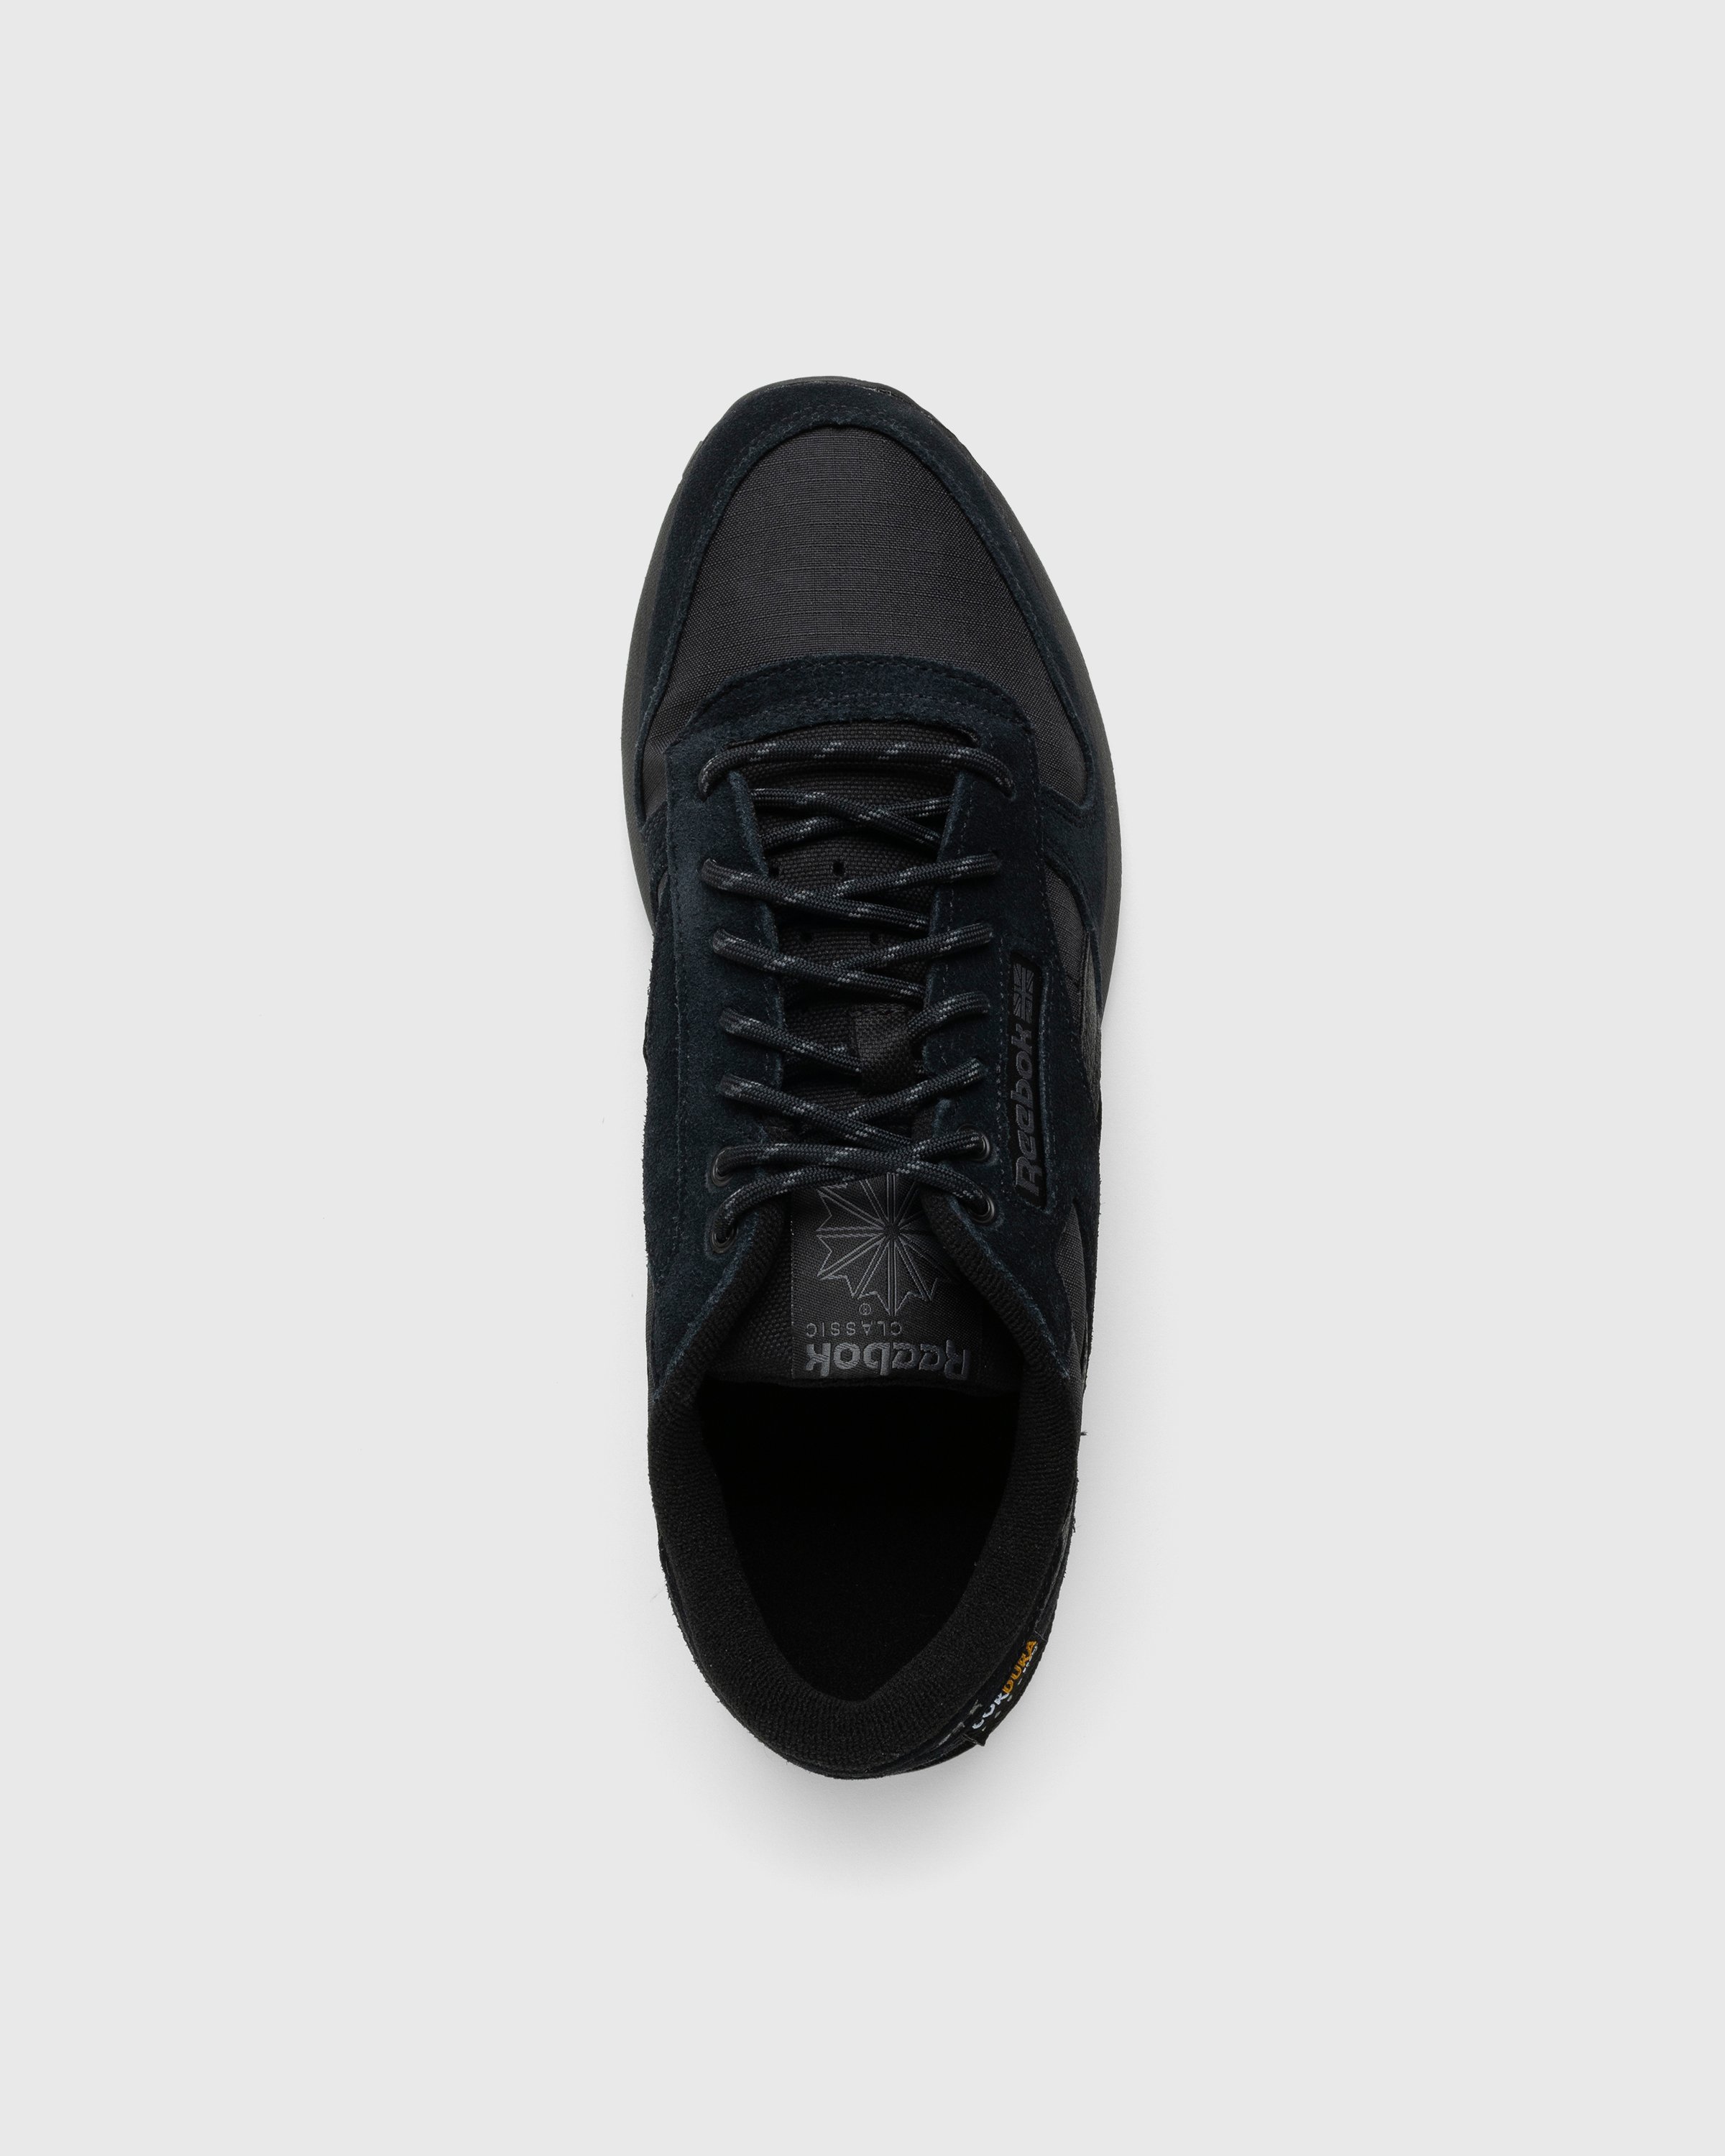 Reebok - LX2200 Black - Footwear - Black - Image 5